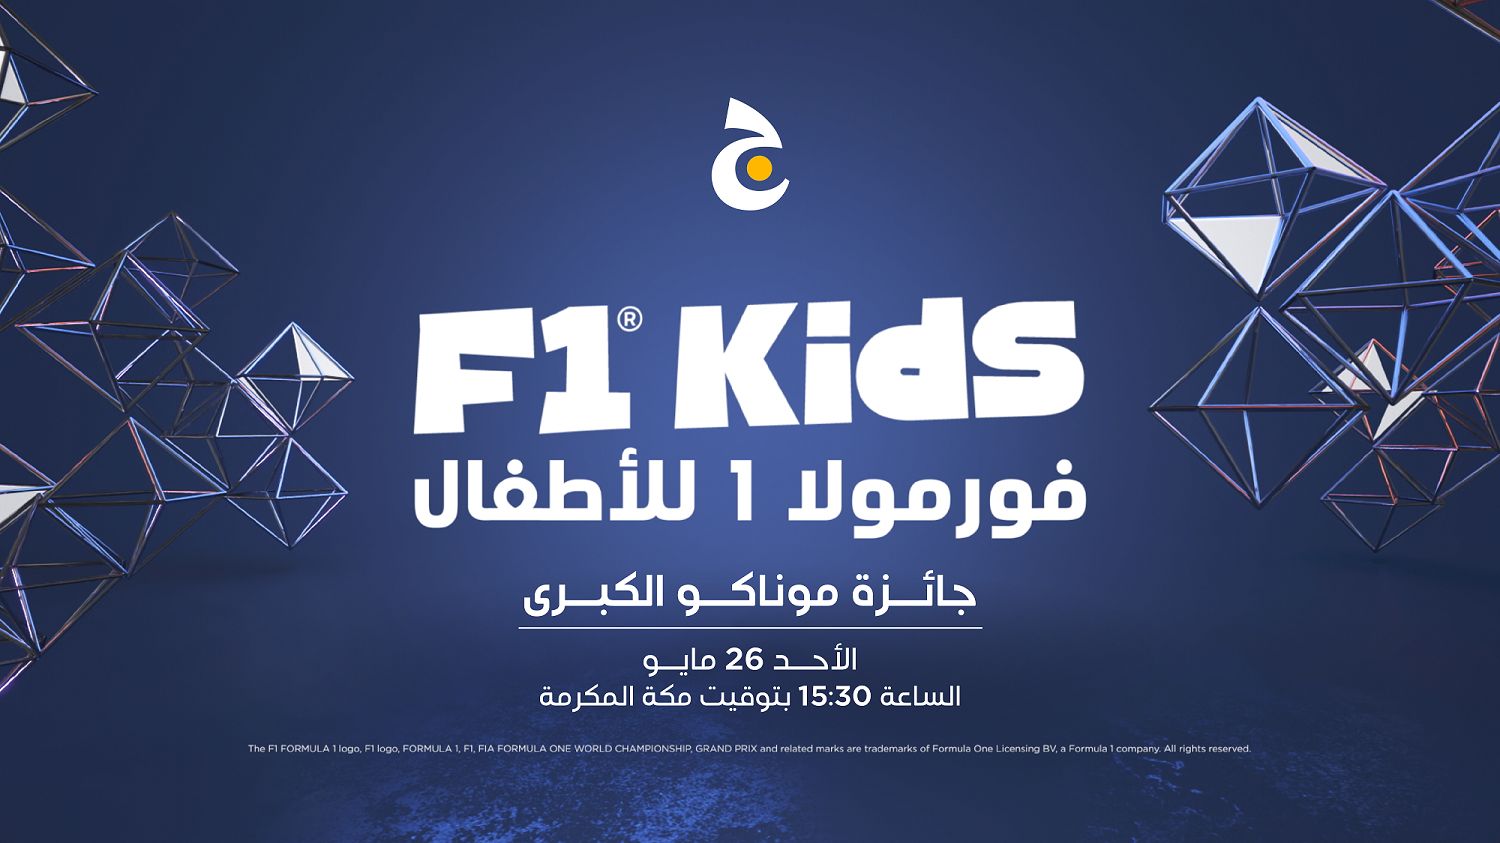 مجموعة beIN الإعلامية تبث برنامج ‘F1 Kids’ في الشرق الأوسط وشمال أفريقيا مباشرة على قناة ﺗﻠﻔﺰﻳﻮﻥ ﺝ الأحد المقبل